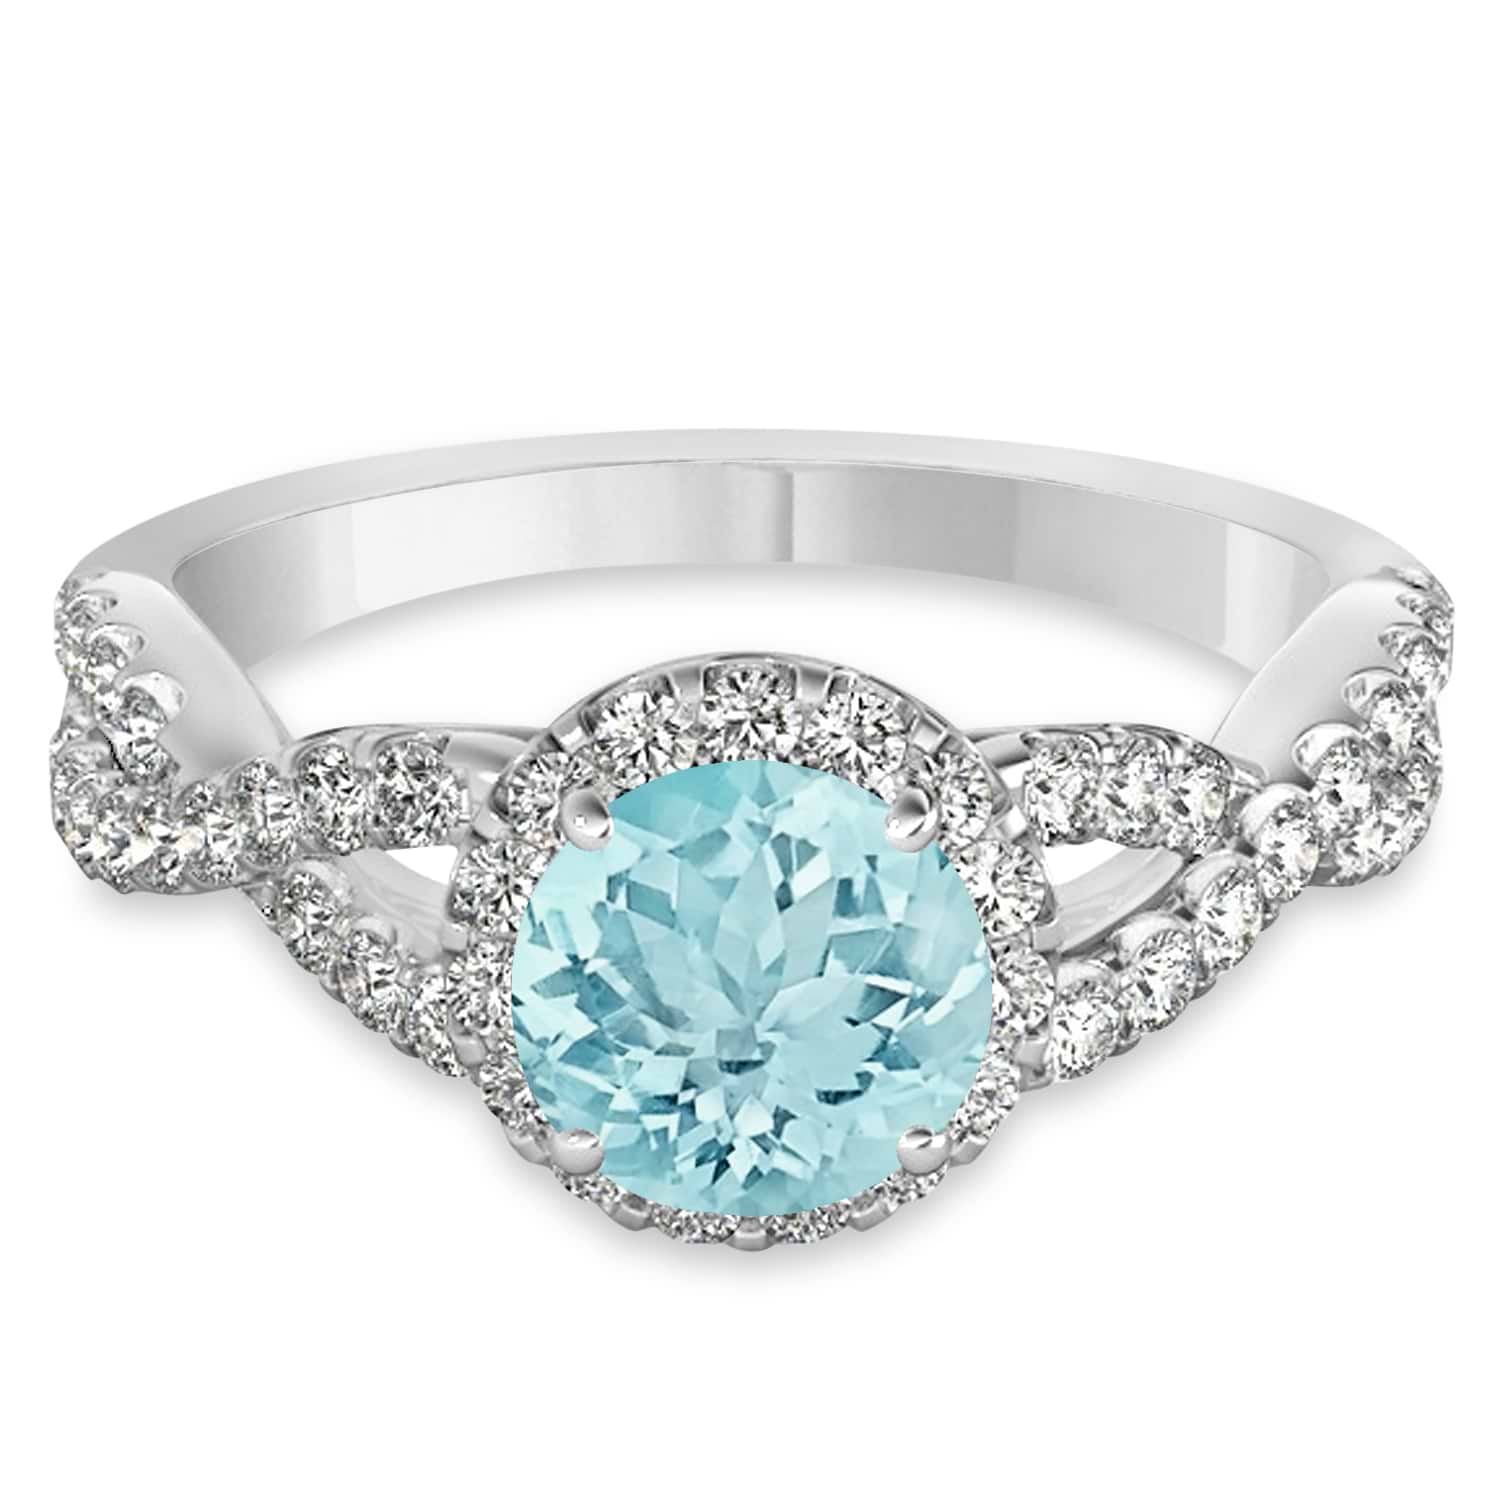 Aquamarine & Diamond Twisted Engagement Ring 18k White Gold 1.25ct